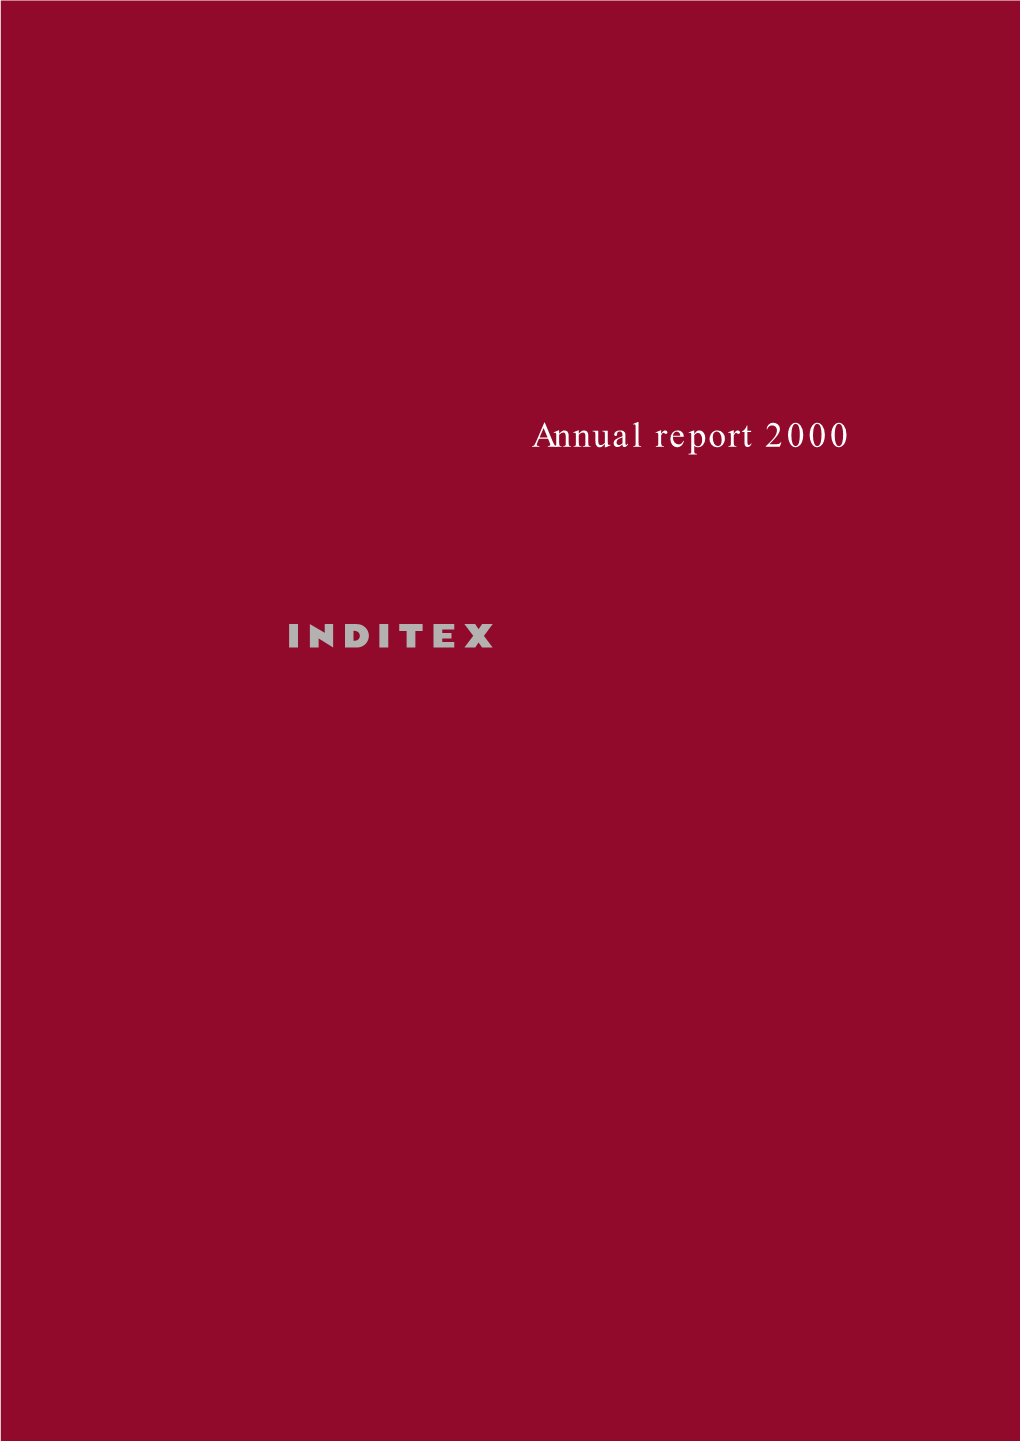 Annual Report 2000 Index